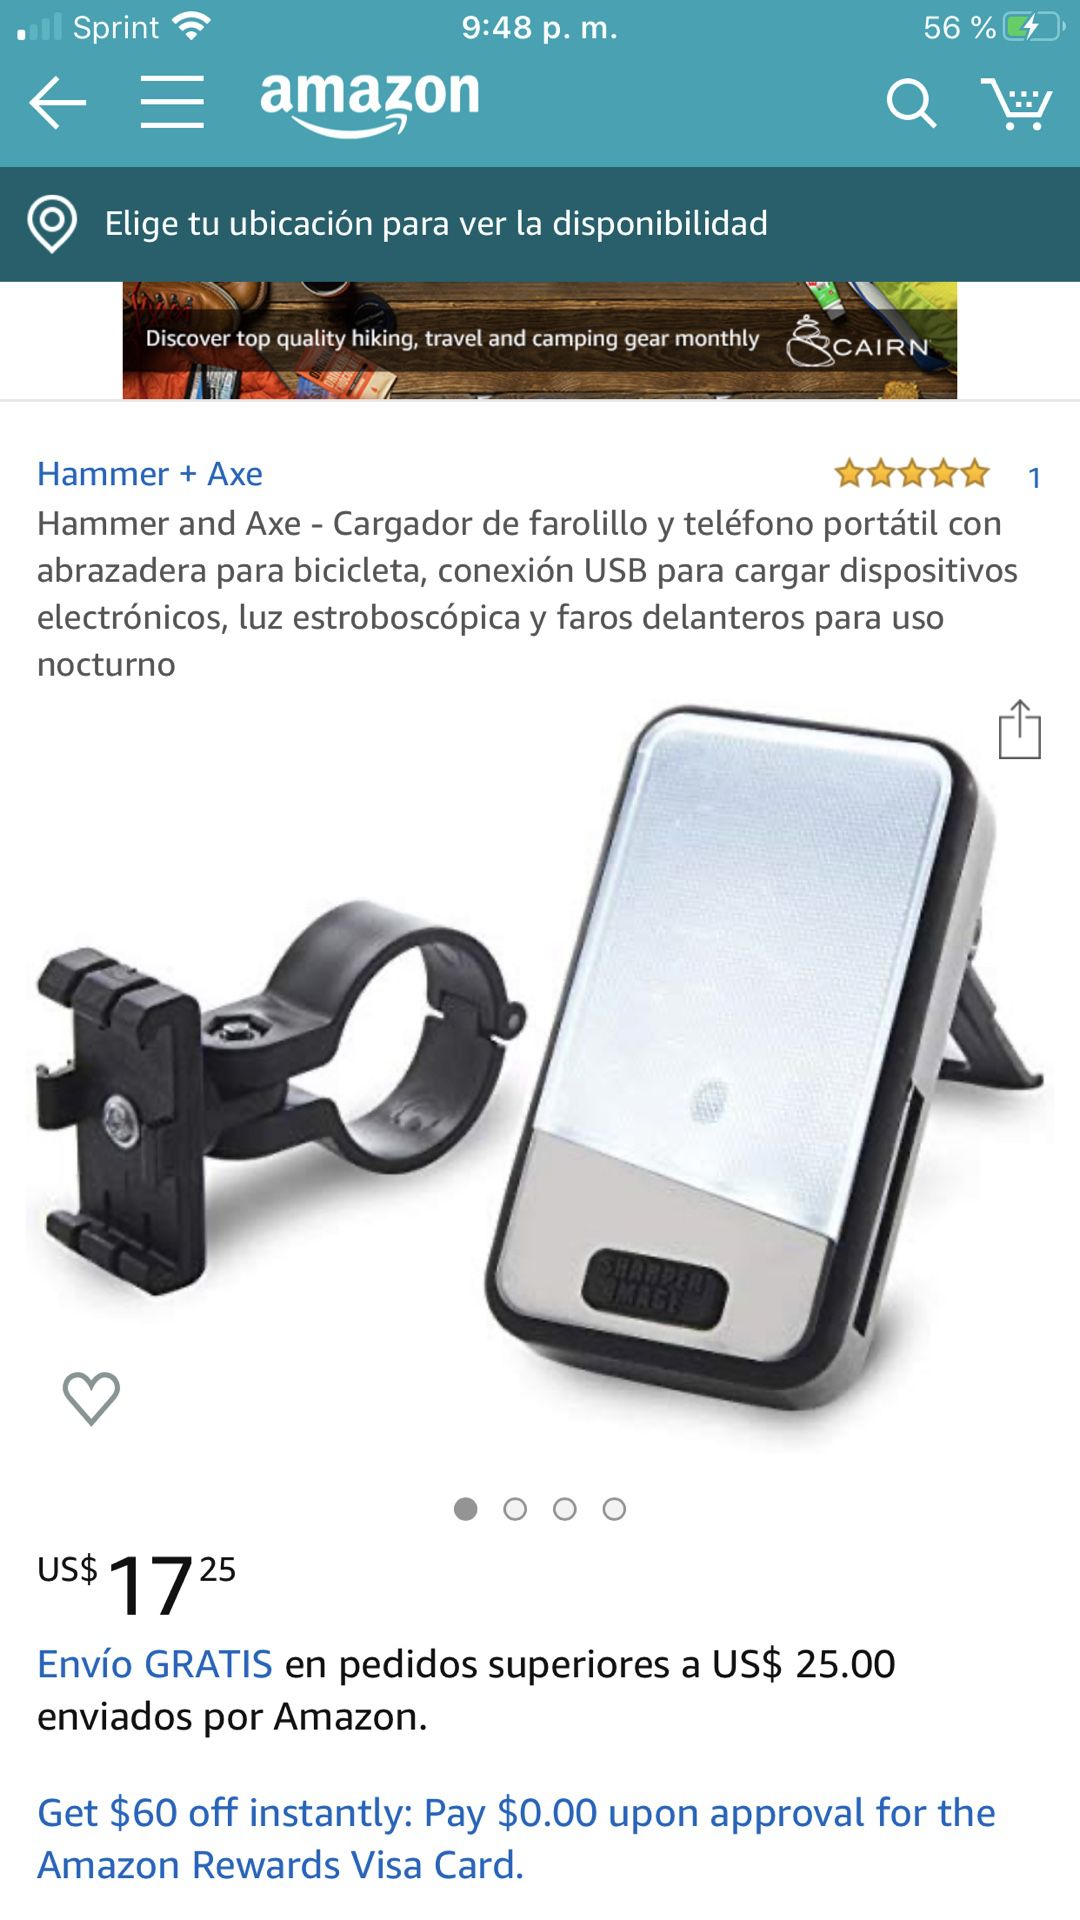 Hammer and Axe - Cargador de farolillo y teléfono portátil con abrazadera para bicicleta, conexión USB para cargar dispositivos electrónicos, luz est